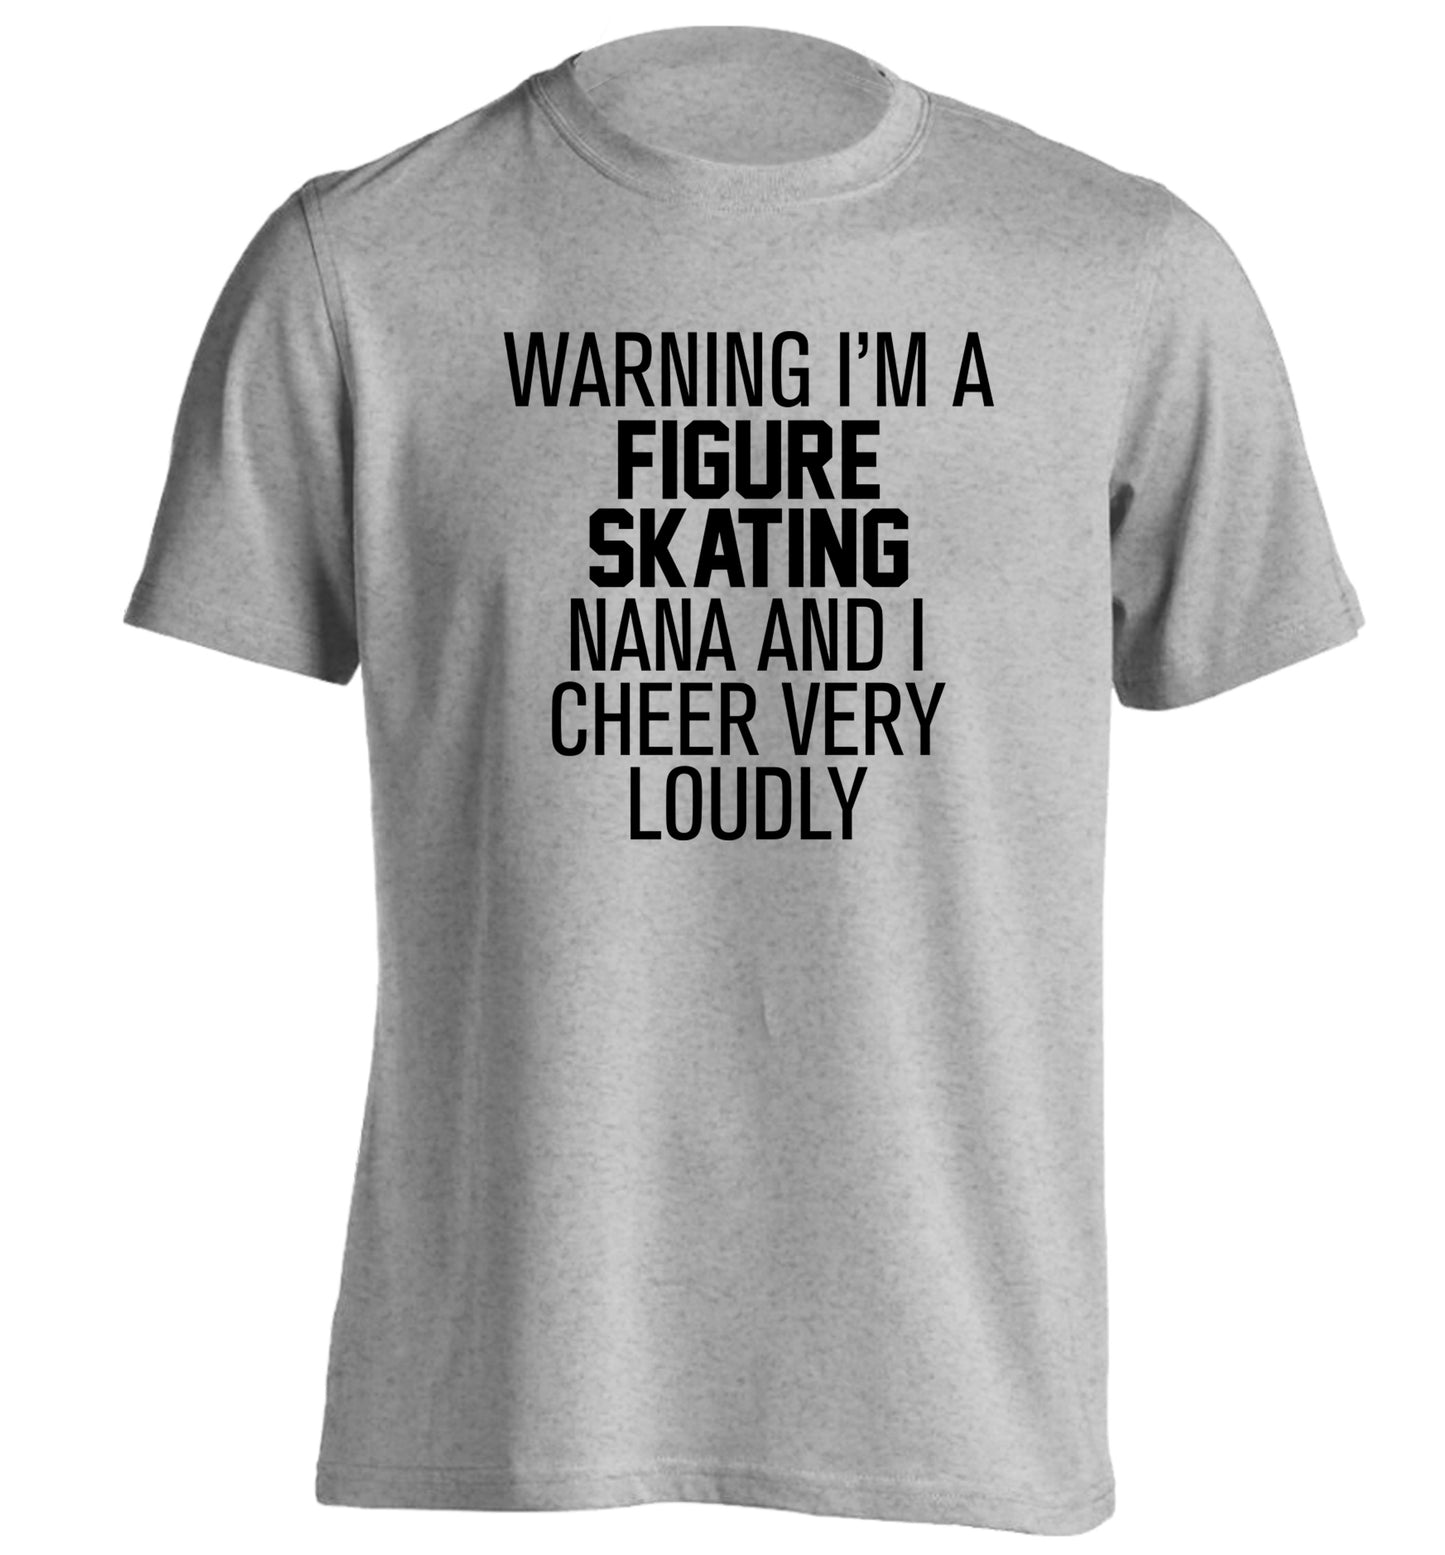 Warning I'm a figure skating nana and I cheer very loudly adults unisexgrey Tshirt 2XL